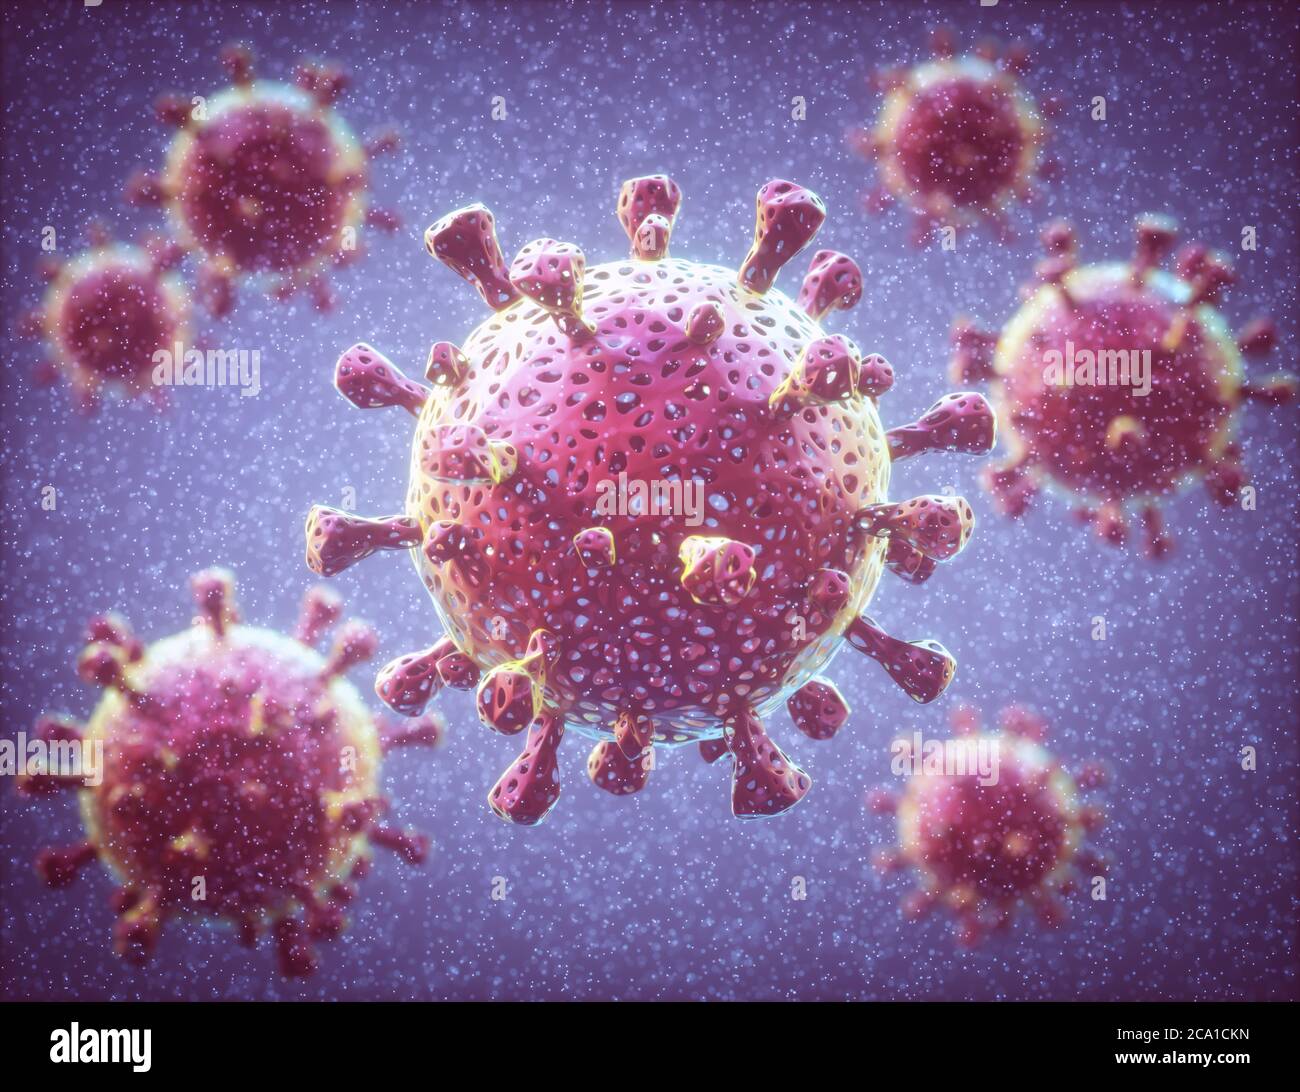 Covid-19, Coronavirus. Diversi virus covid-19 infettano l'organismo umano. Immagine concettuale del virus all'interno delle cellule umane. Foto Stock